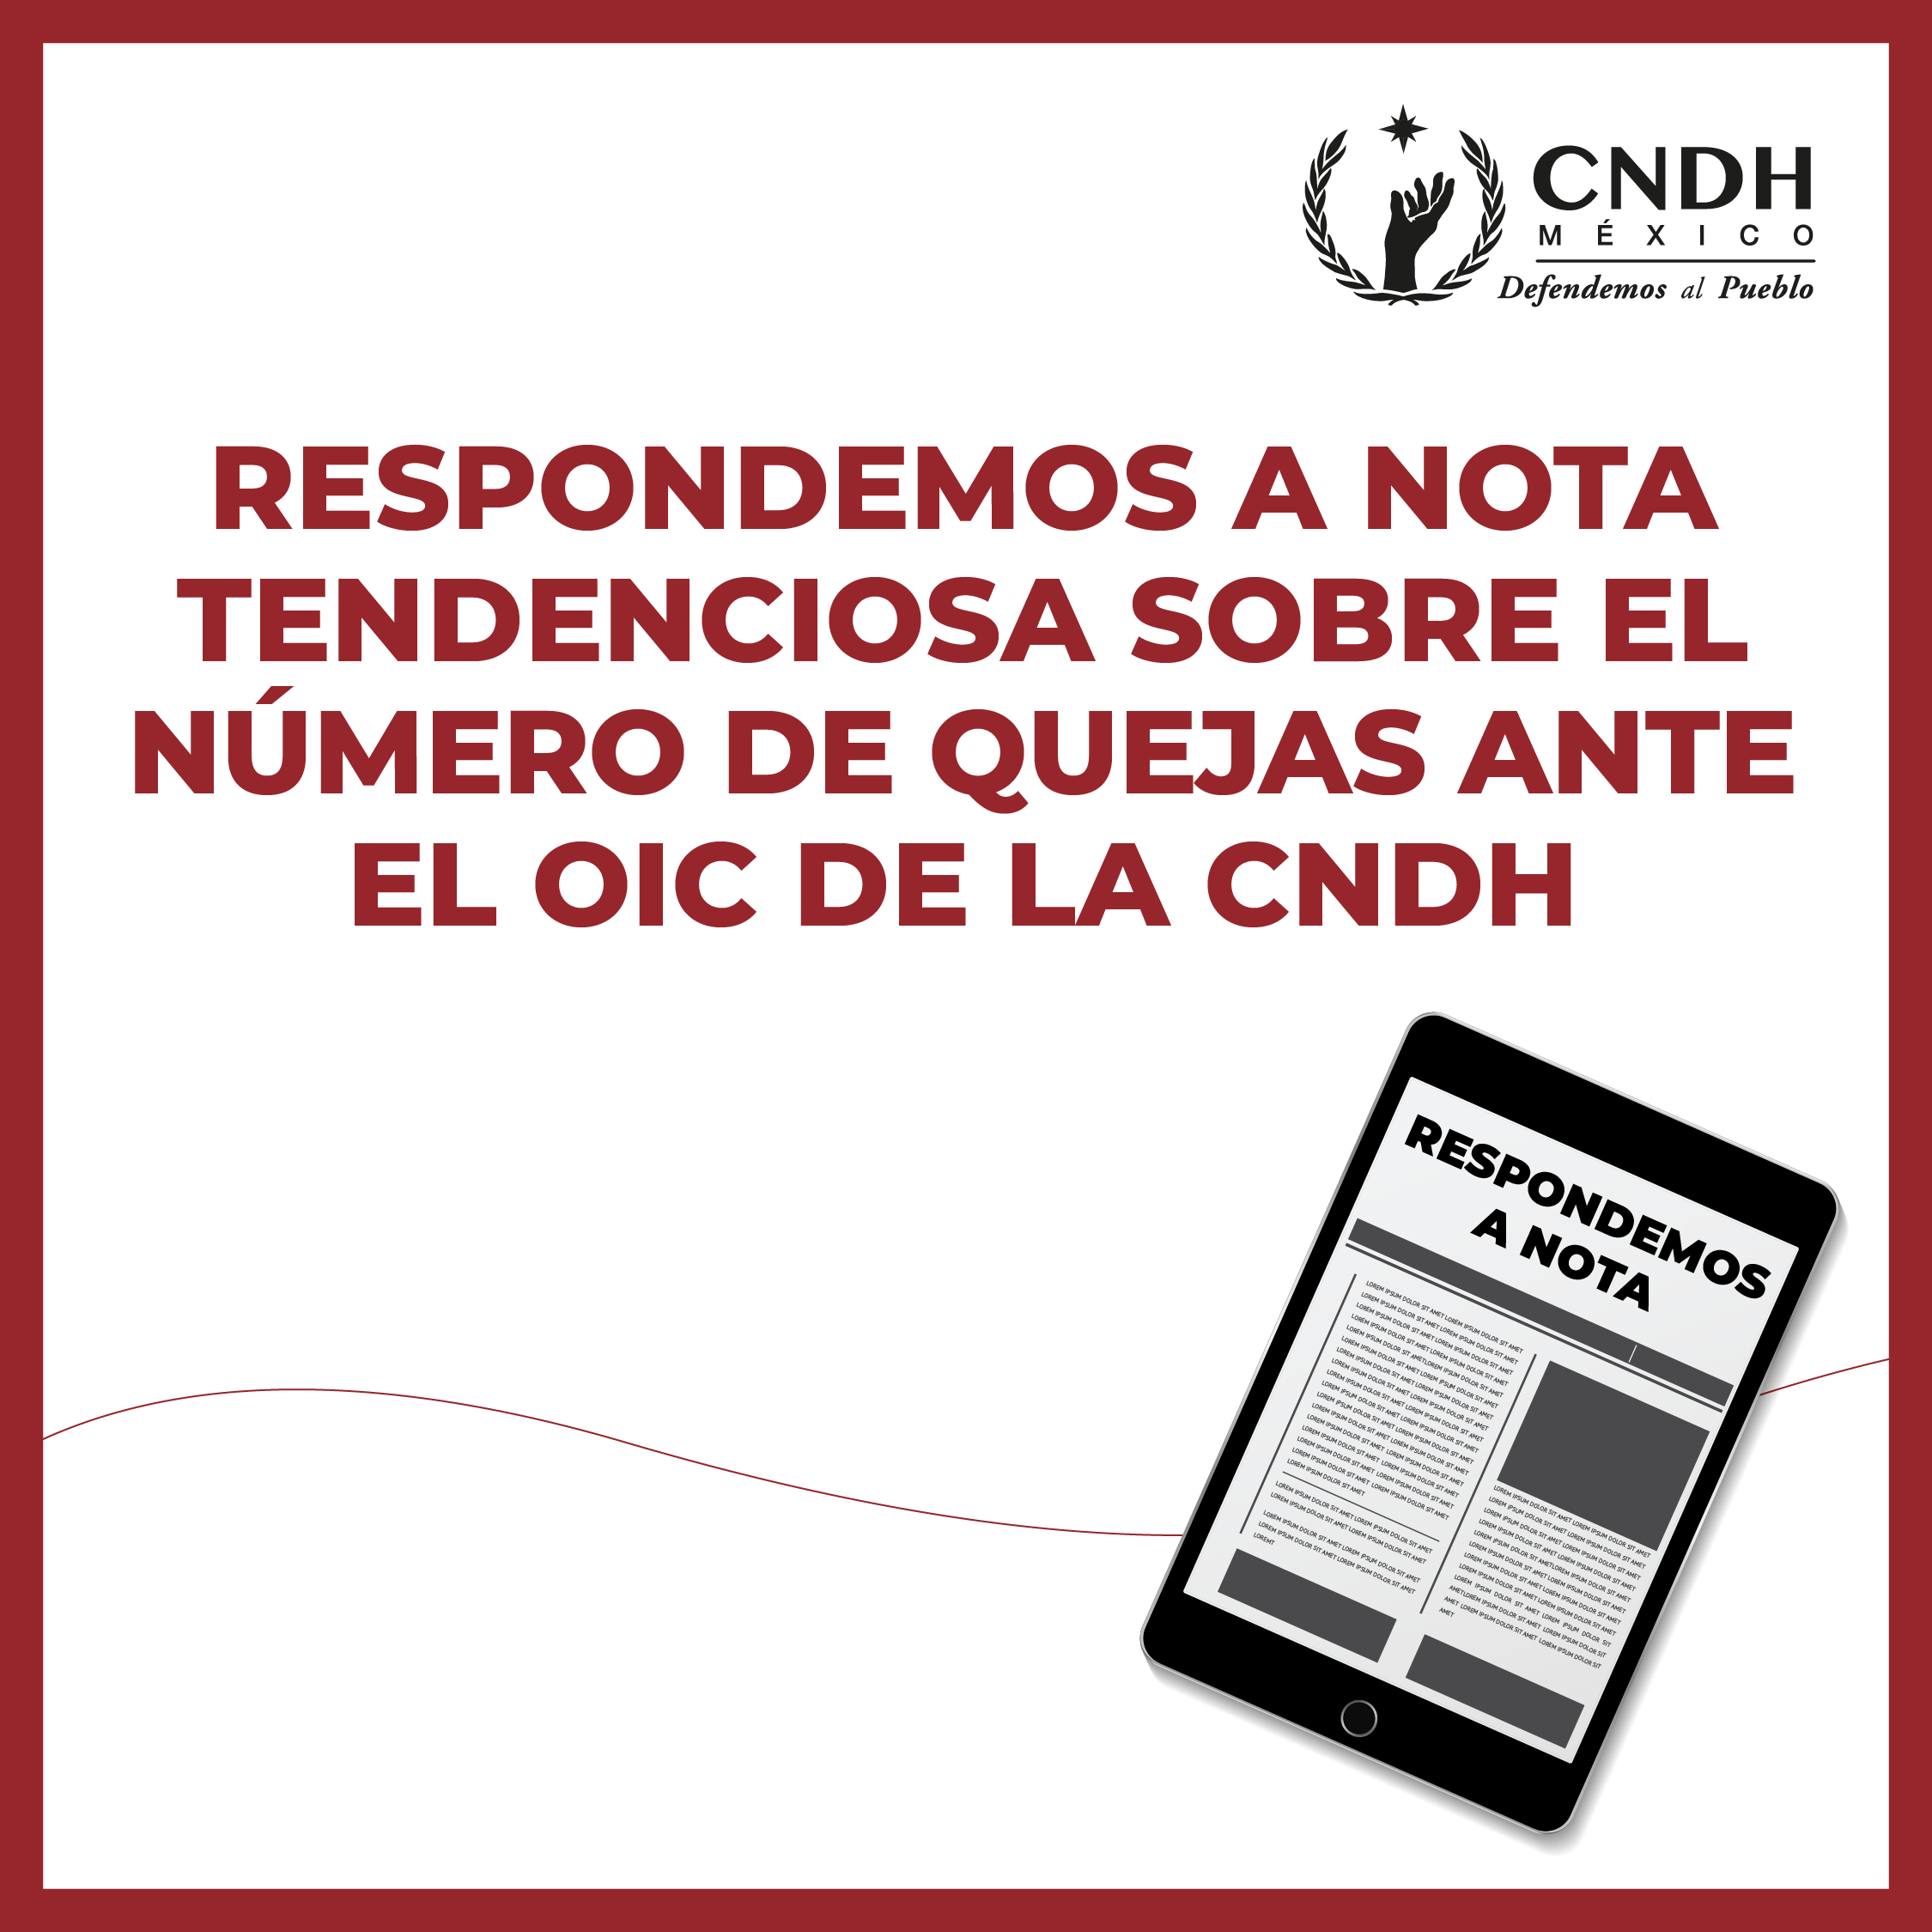 Respondemos a nota tendenciosa sobre el número de quejas ante el OIC de la CNDH.